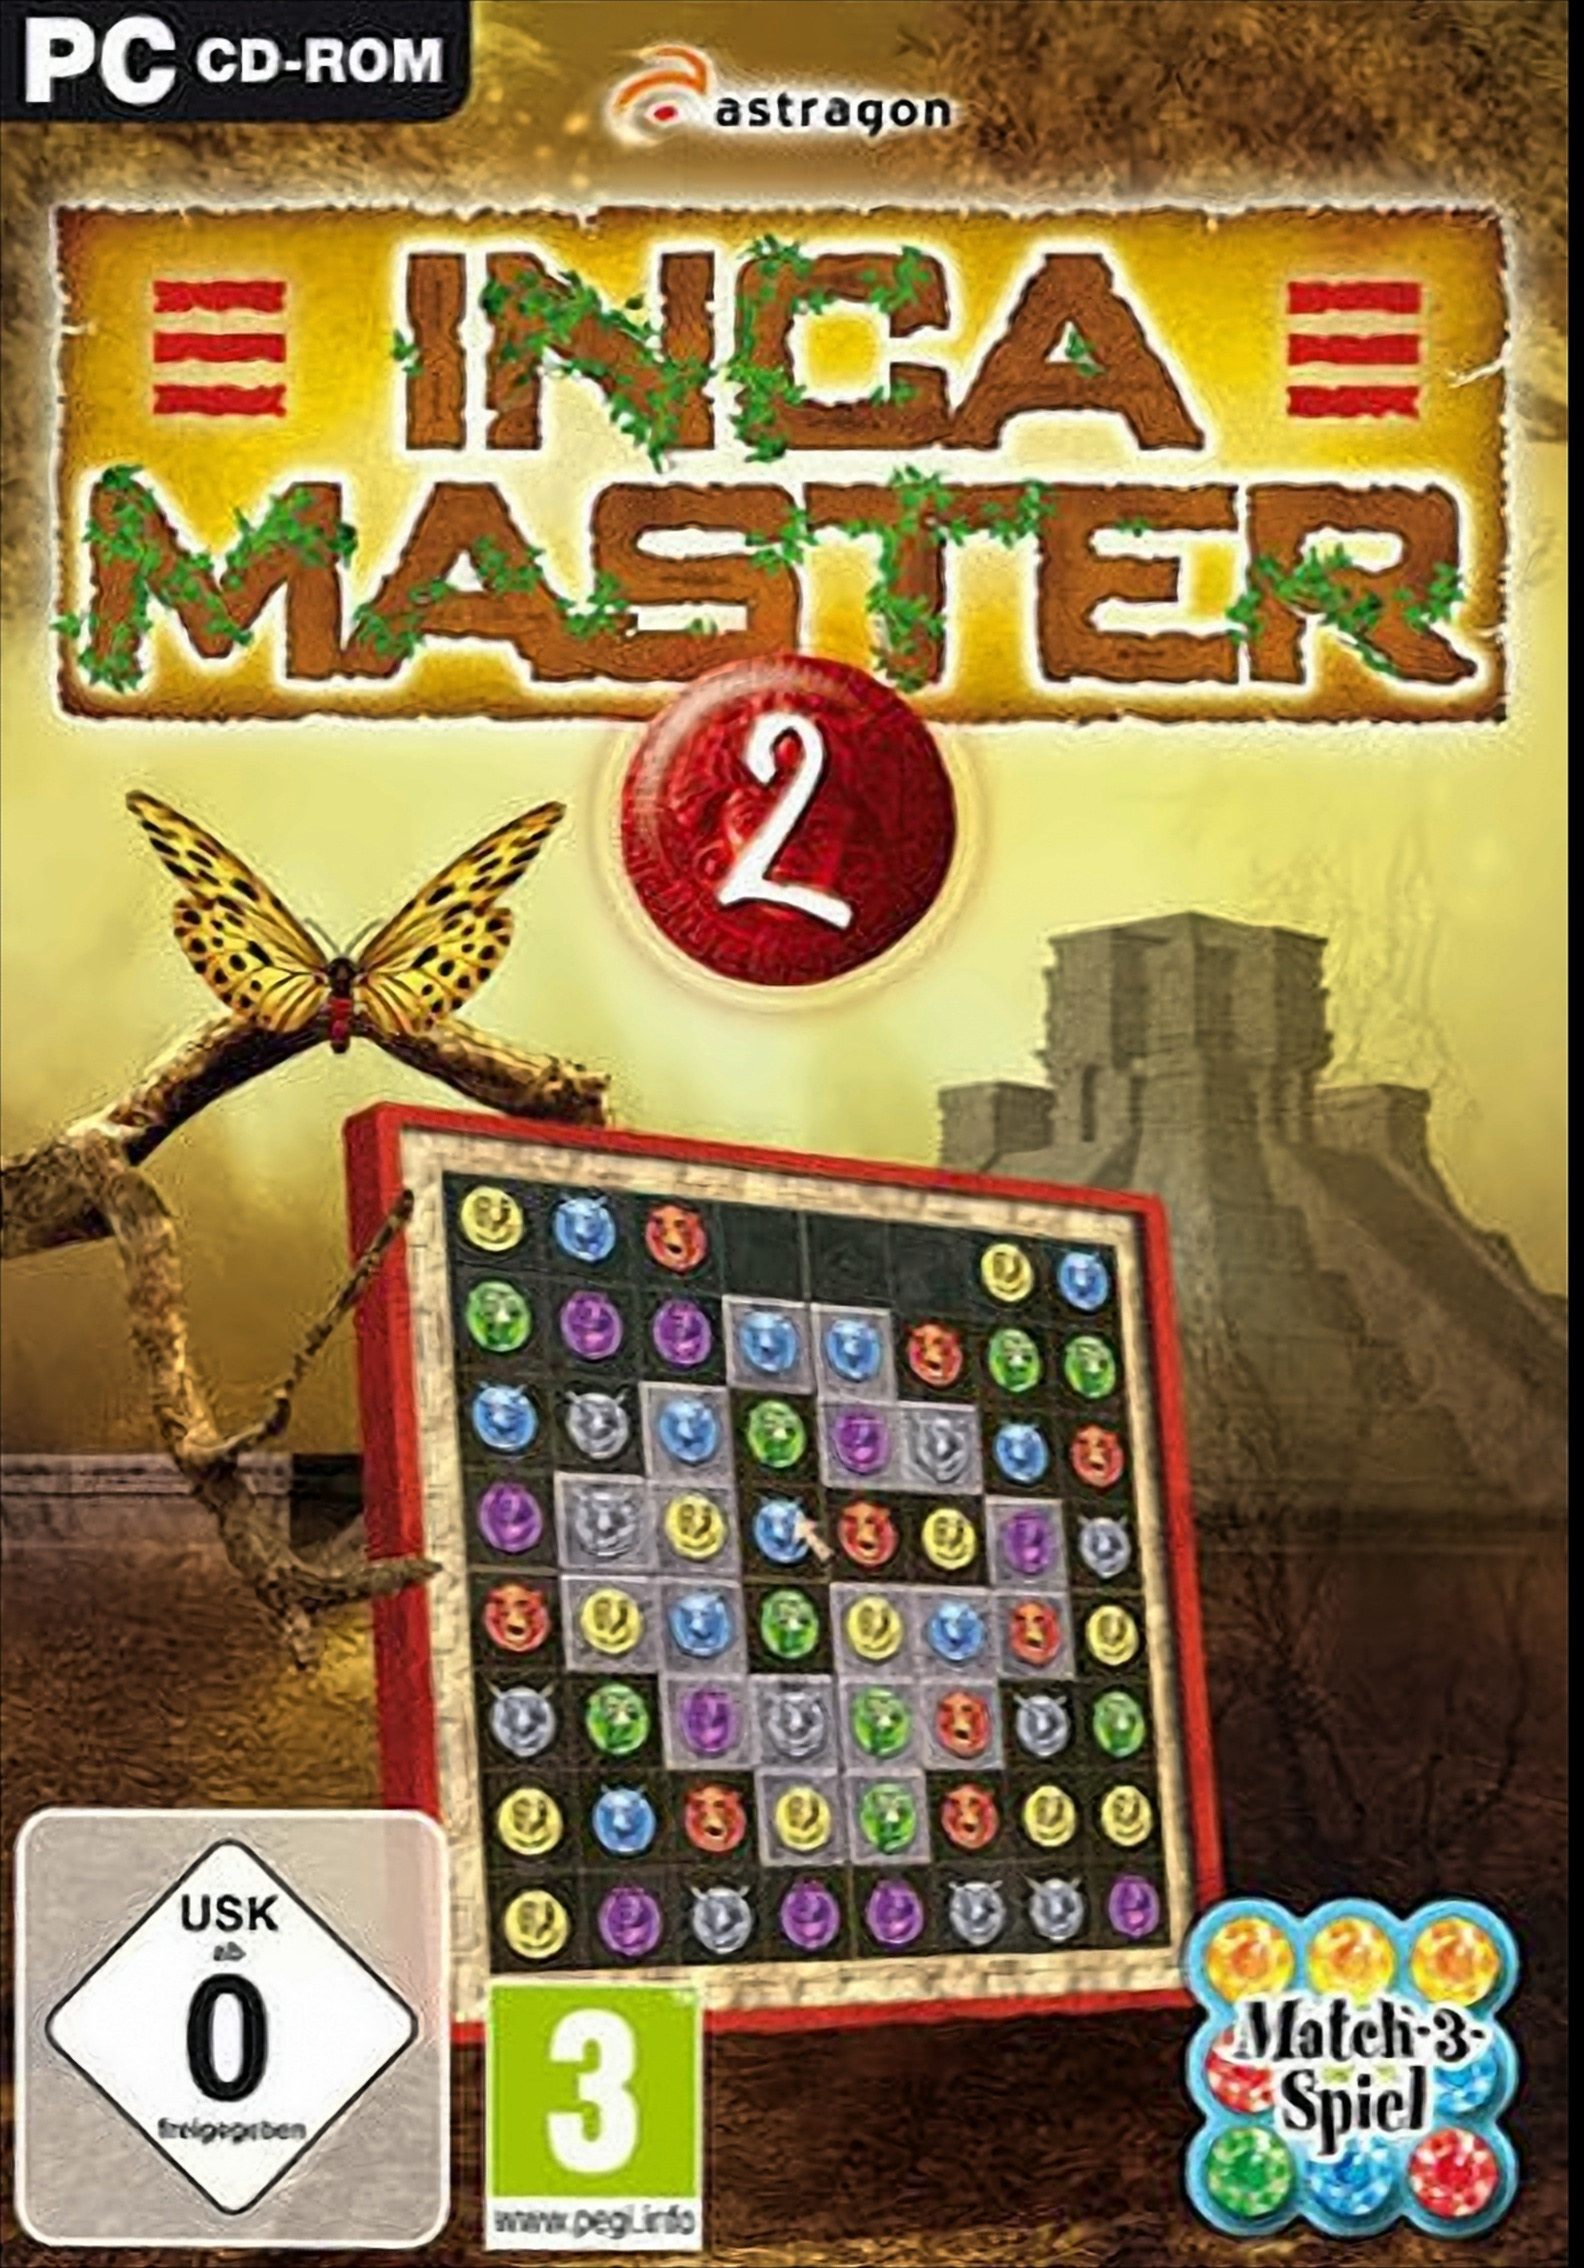 - Master [PC] 2 Inca